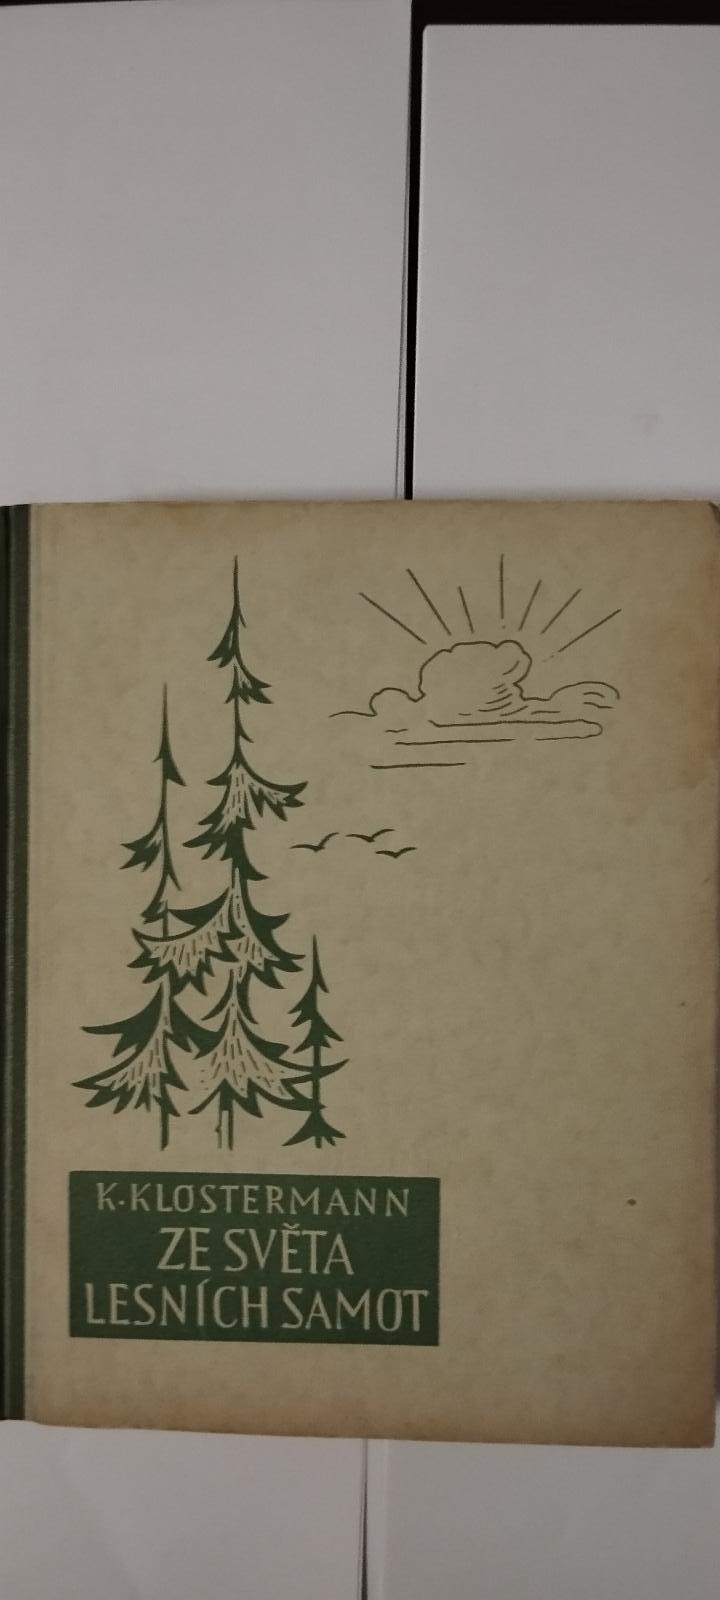 Zo sveta lesných samot - K.Klostermann - Knihy